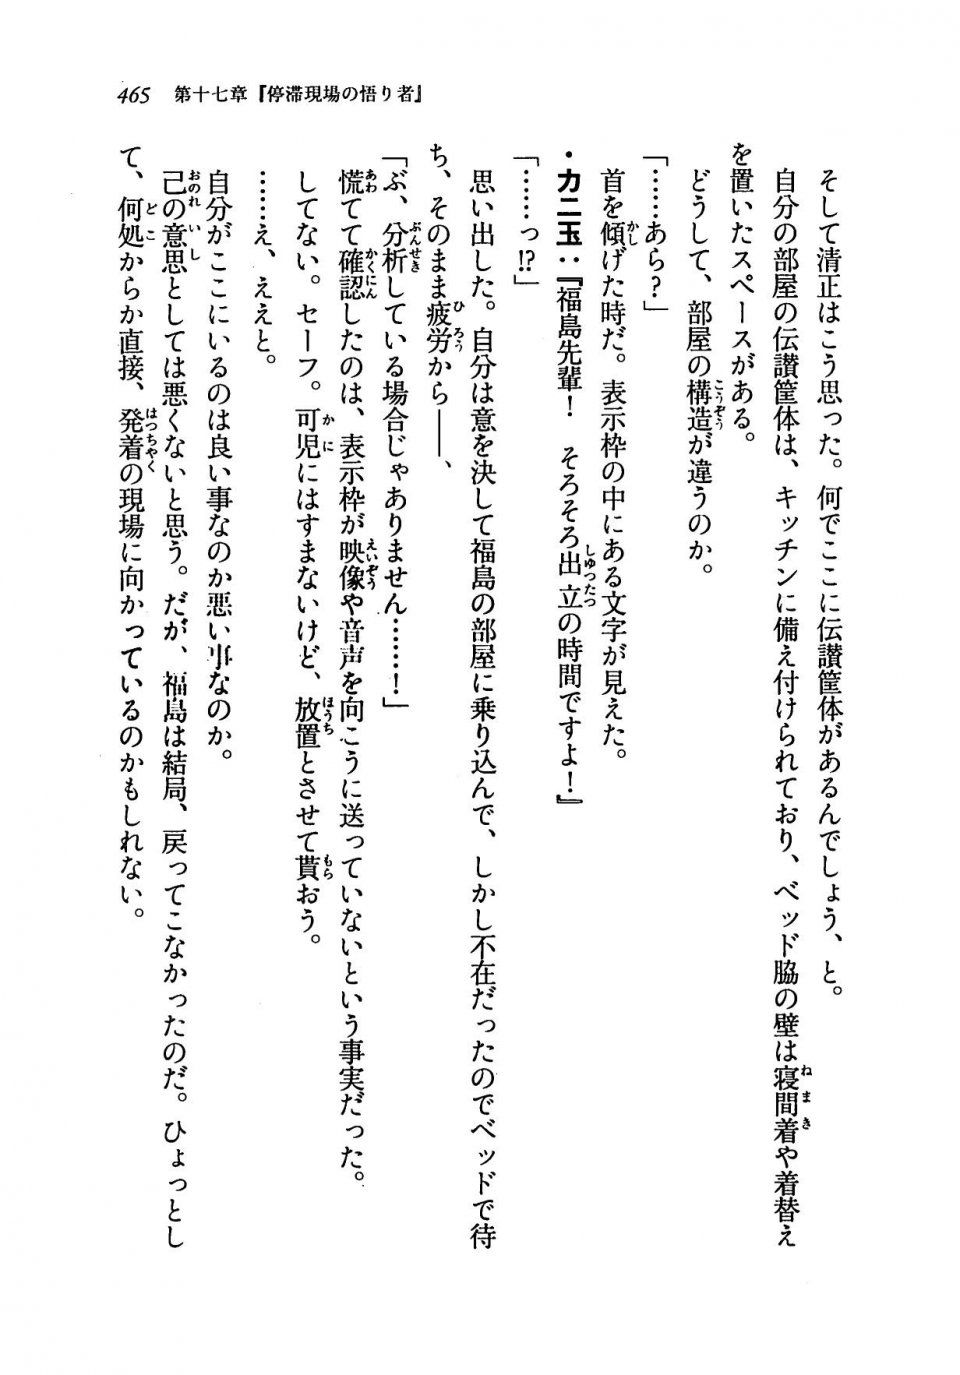 Kyoukai Senjou no Horizon LN Vol 19(8A) - Photo #465